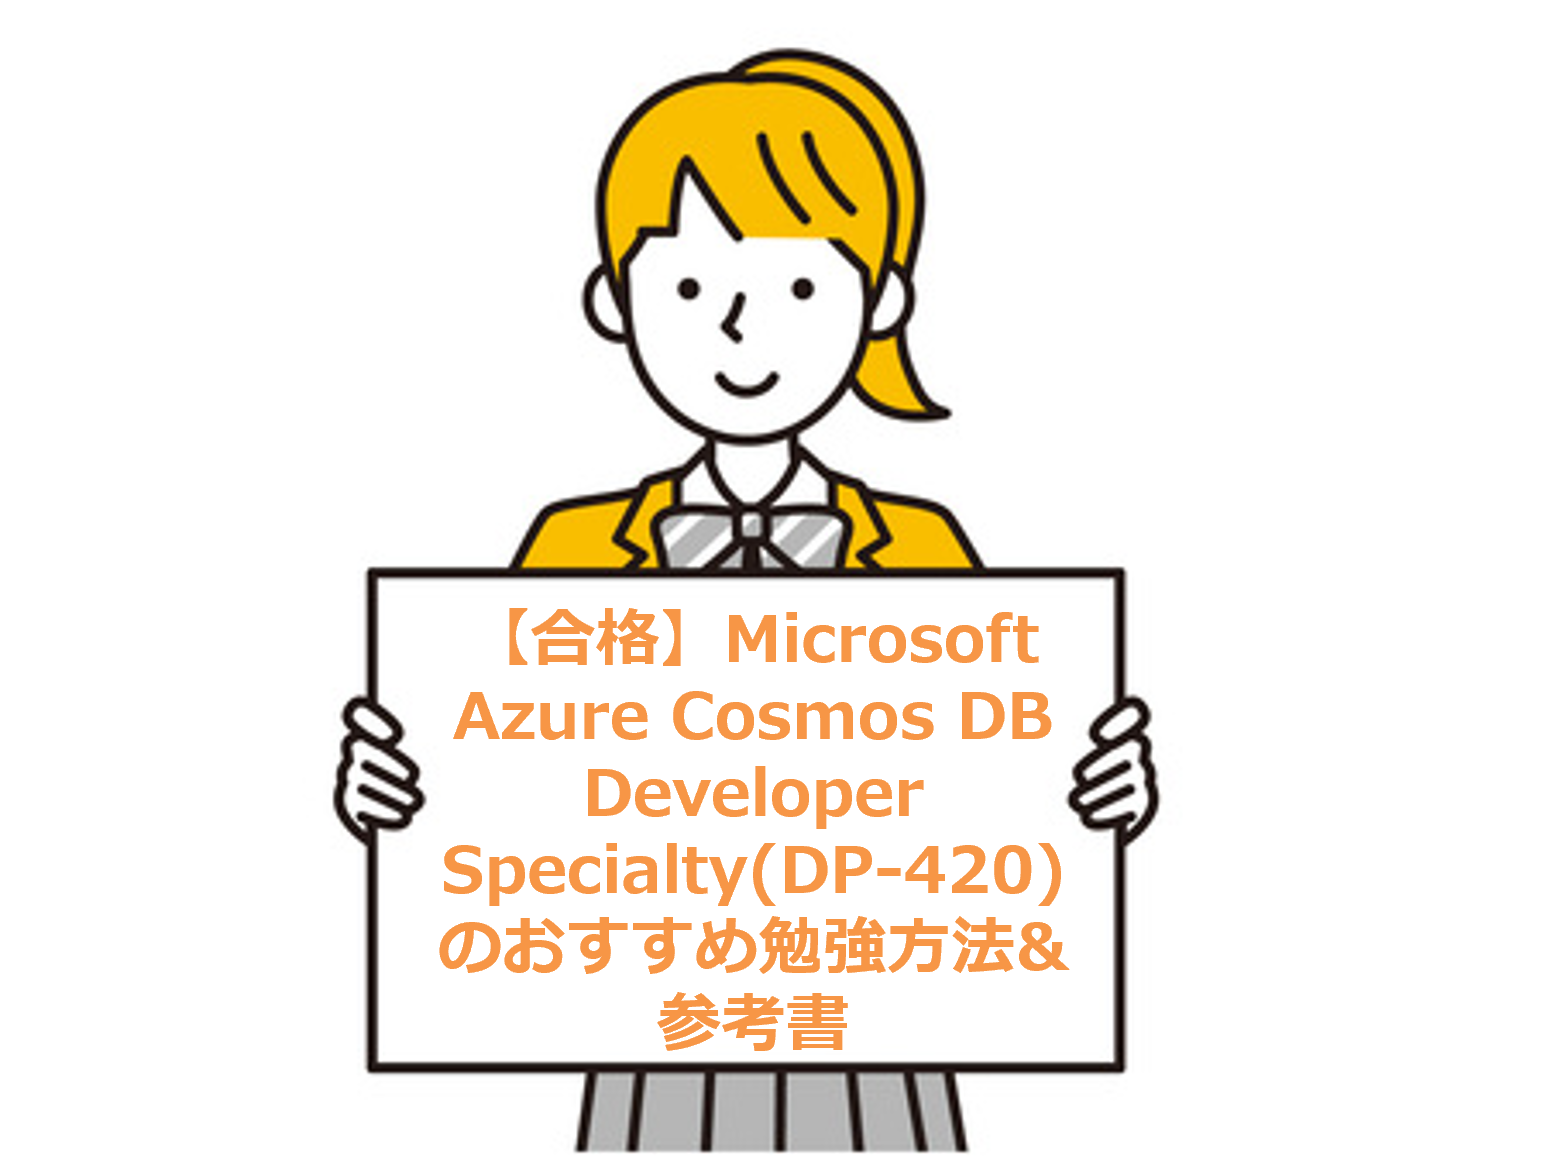 【合格】Microsoft Azure Cosmos DB Developer Specialty(DP-420)のおすすめ勉強方法&参考書